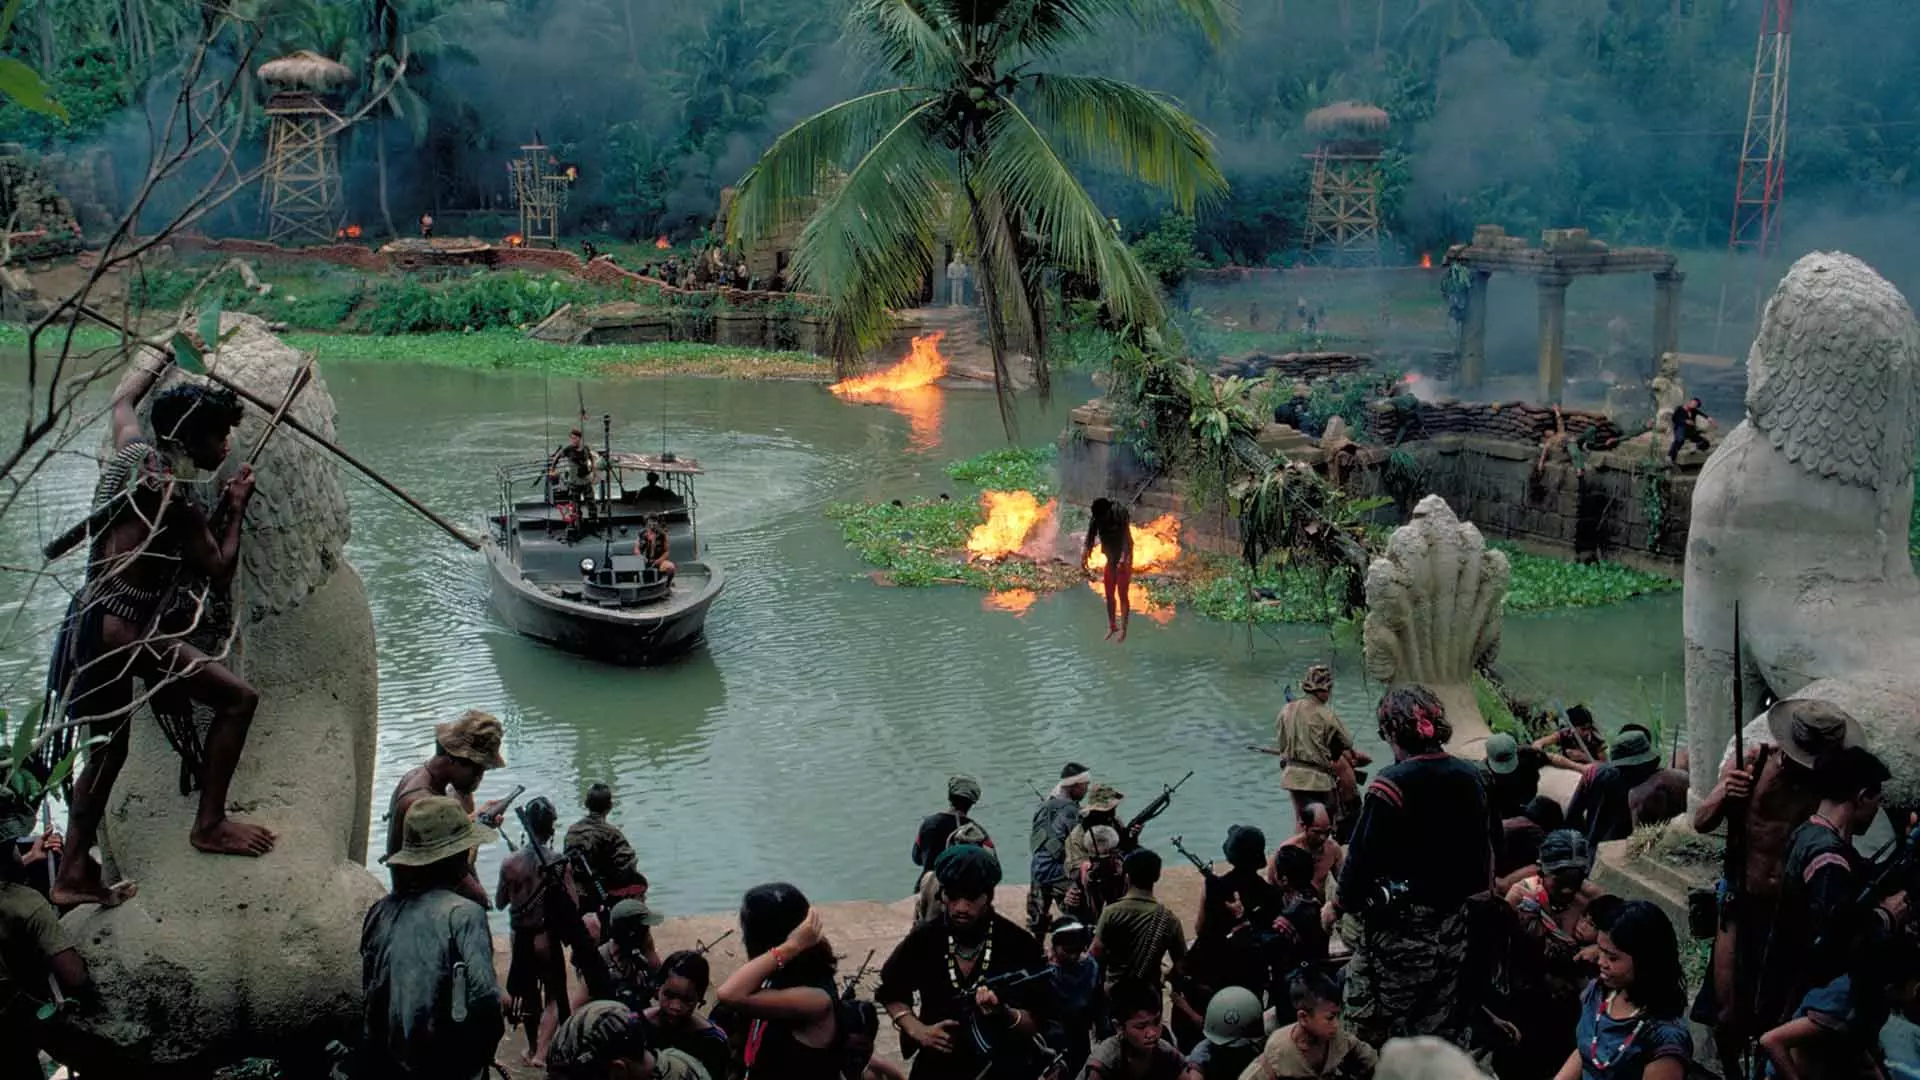 دریاچه‌ای در حال سوختن مقابل مردم در فیلم Apocalypse Now